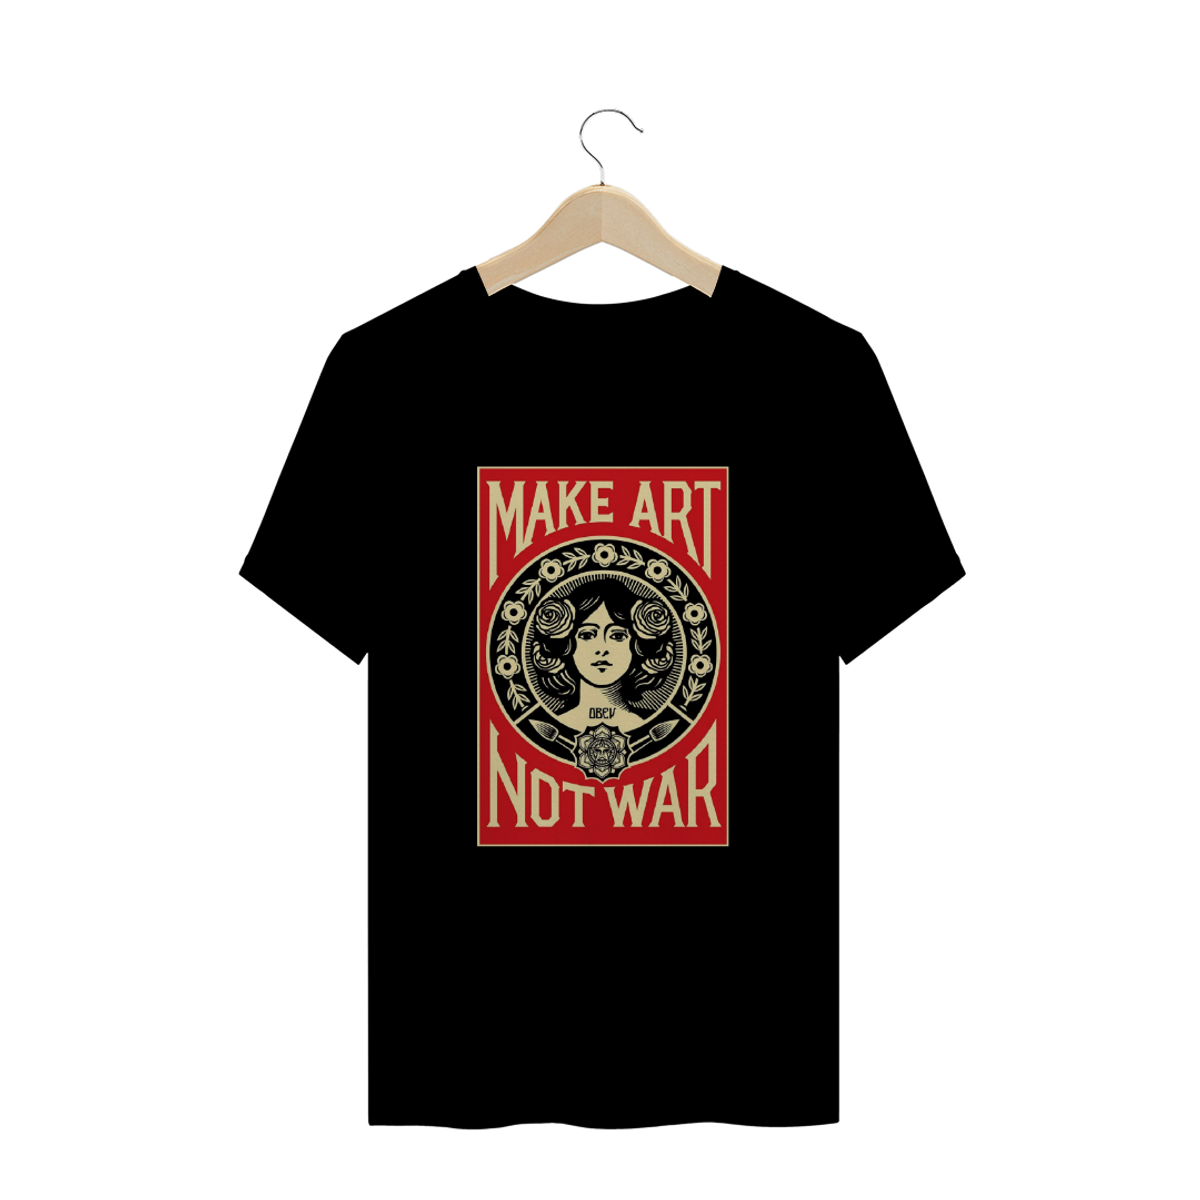 Nome do produtoMake art not war